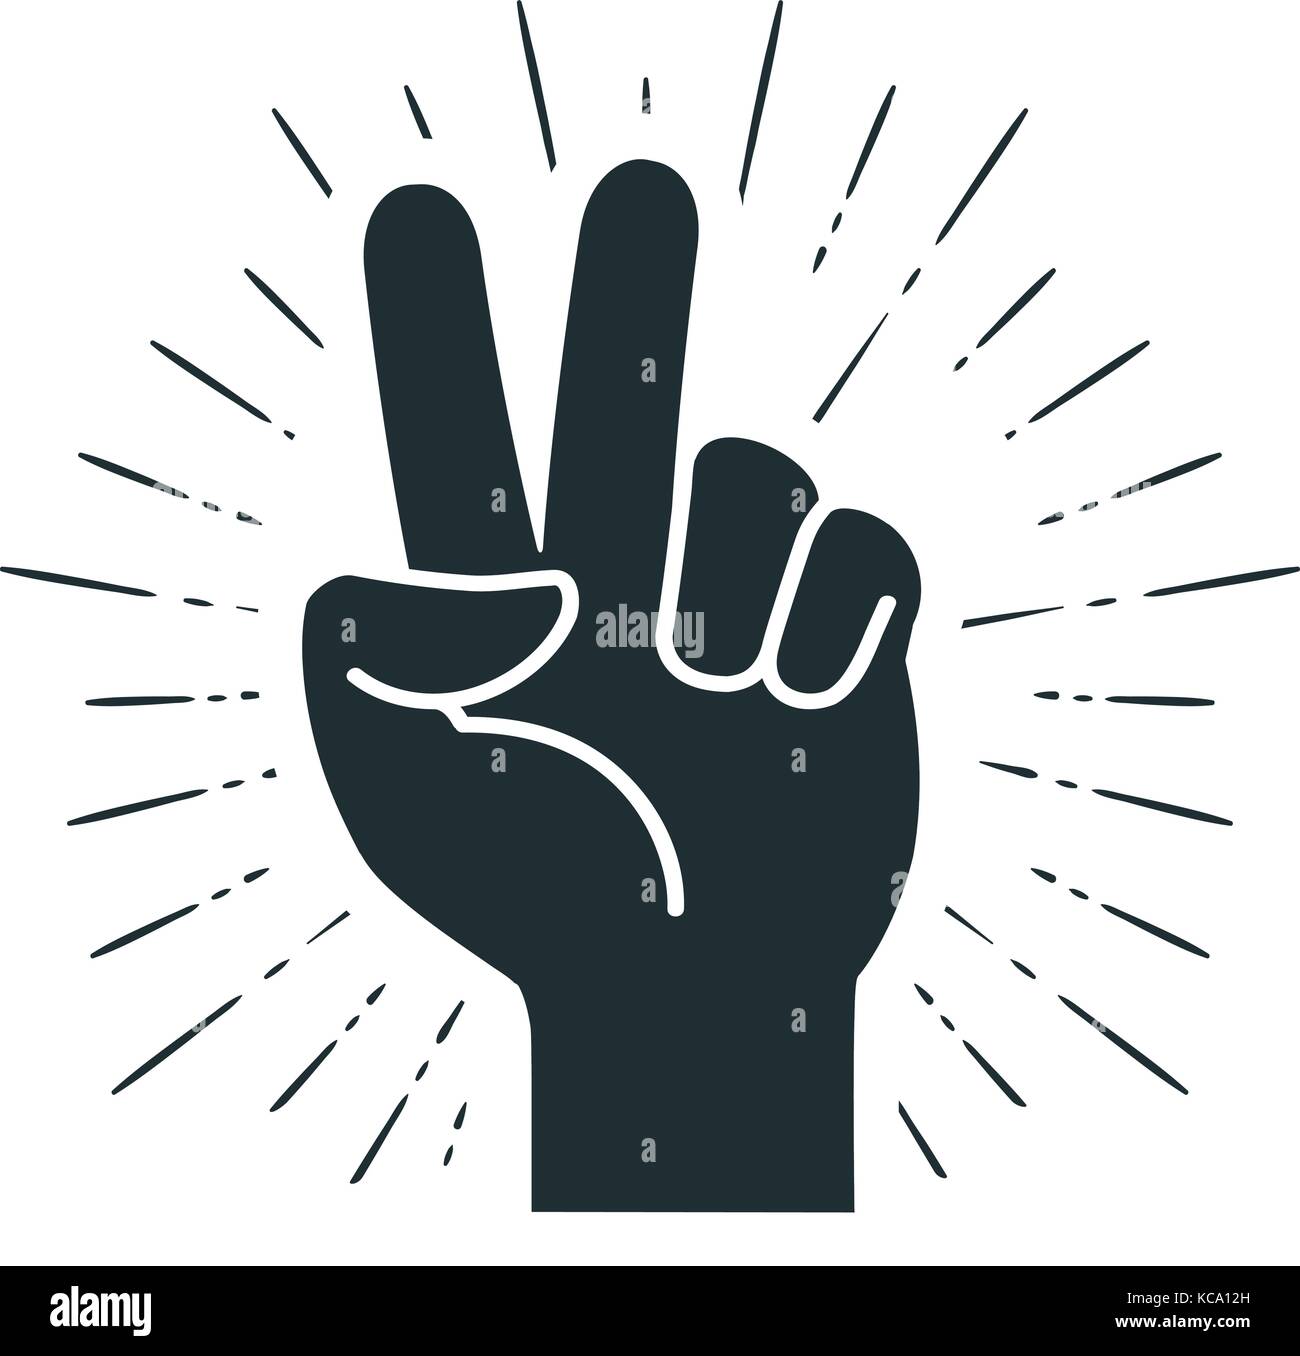 Sieg, Geste der Hand. Zwei Finger angehoben. Frieden, Freiheit Zeichen oder Symbol. Vector Illustration Stock Vektor